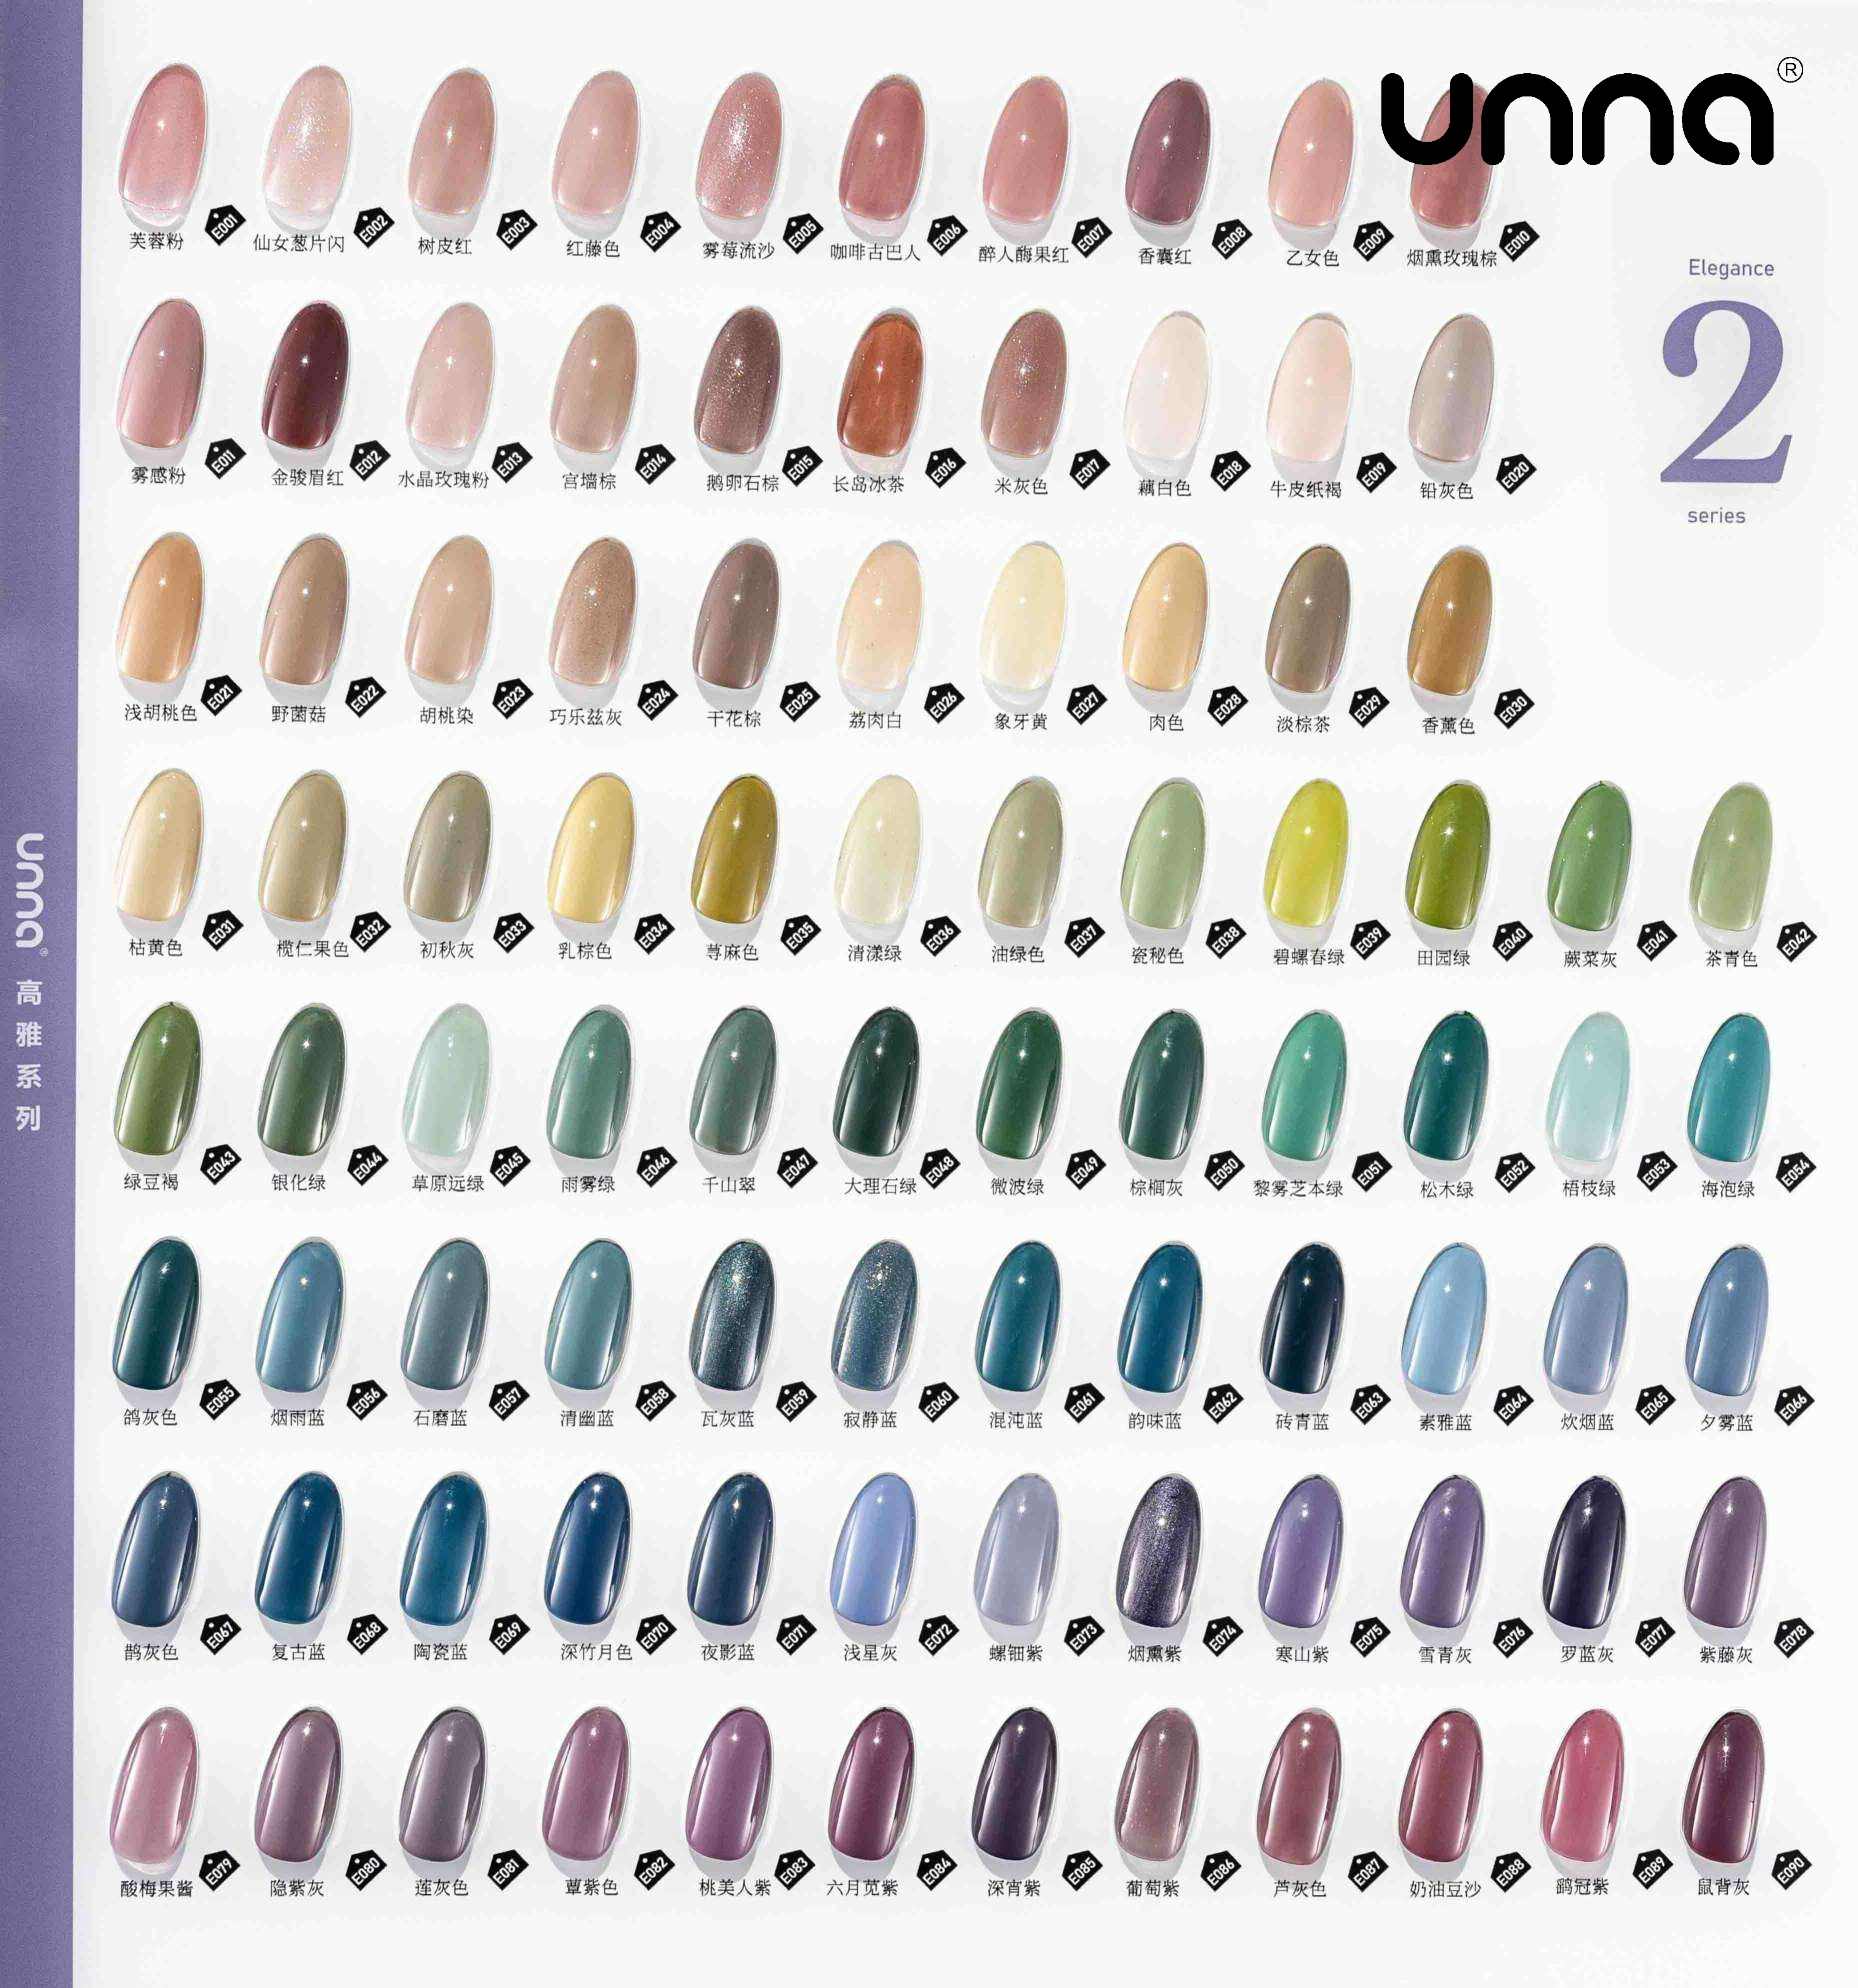 UNNA Color Soak Off Uv Gel指甲油优雅系列